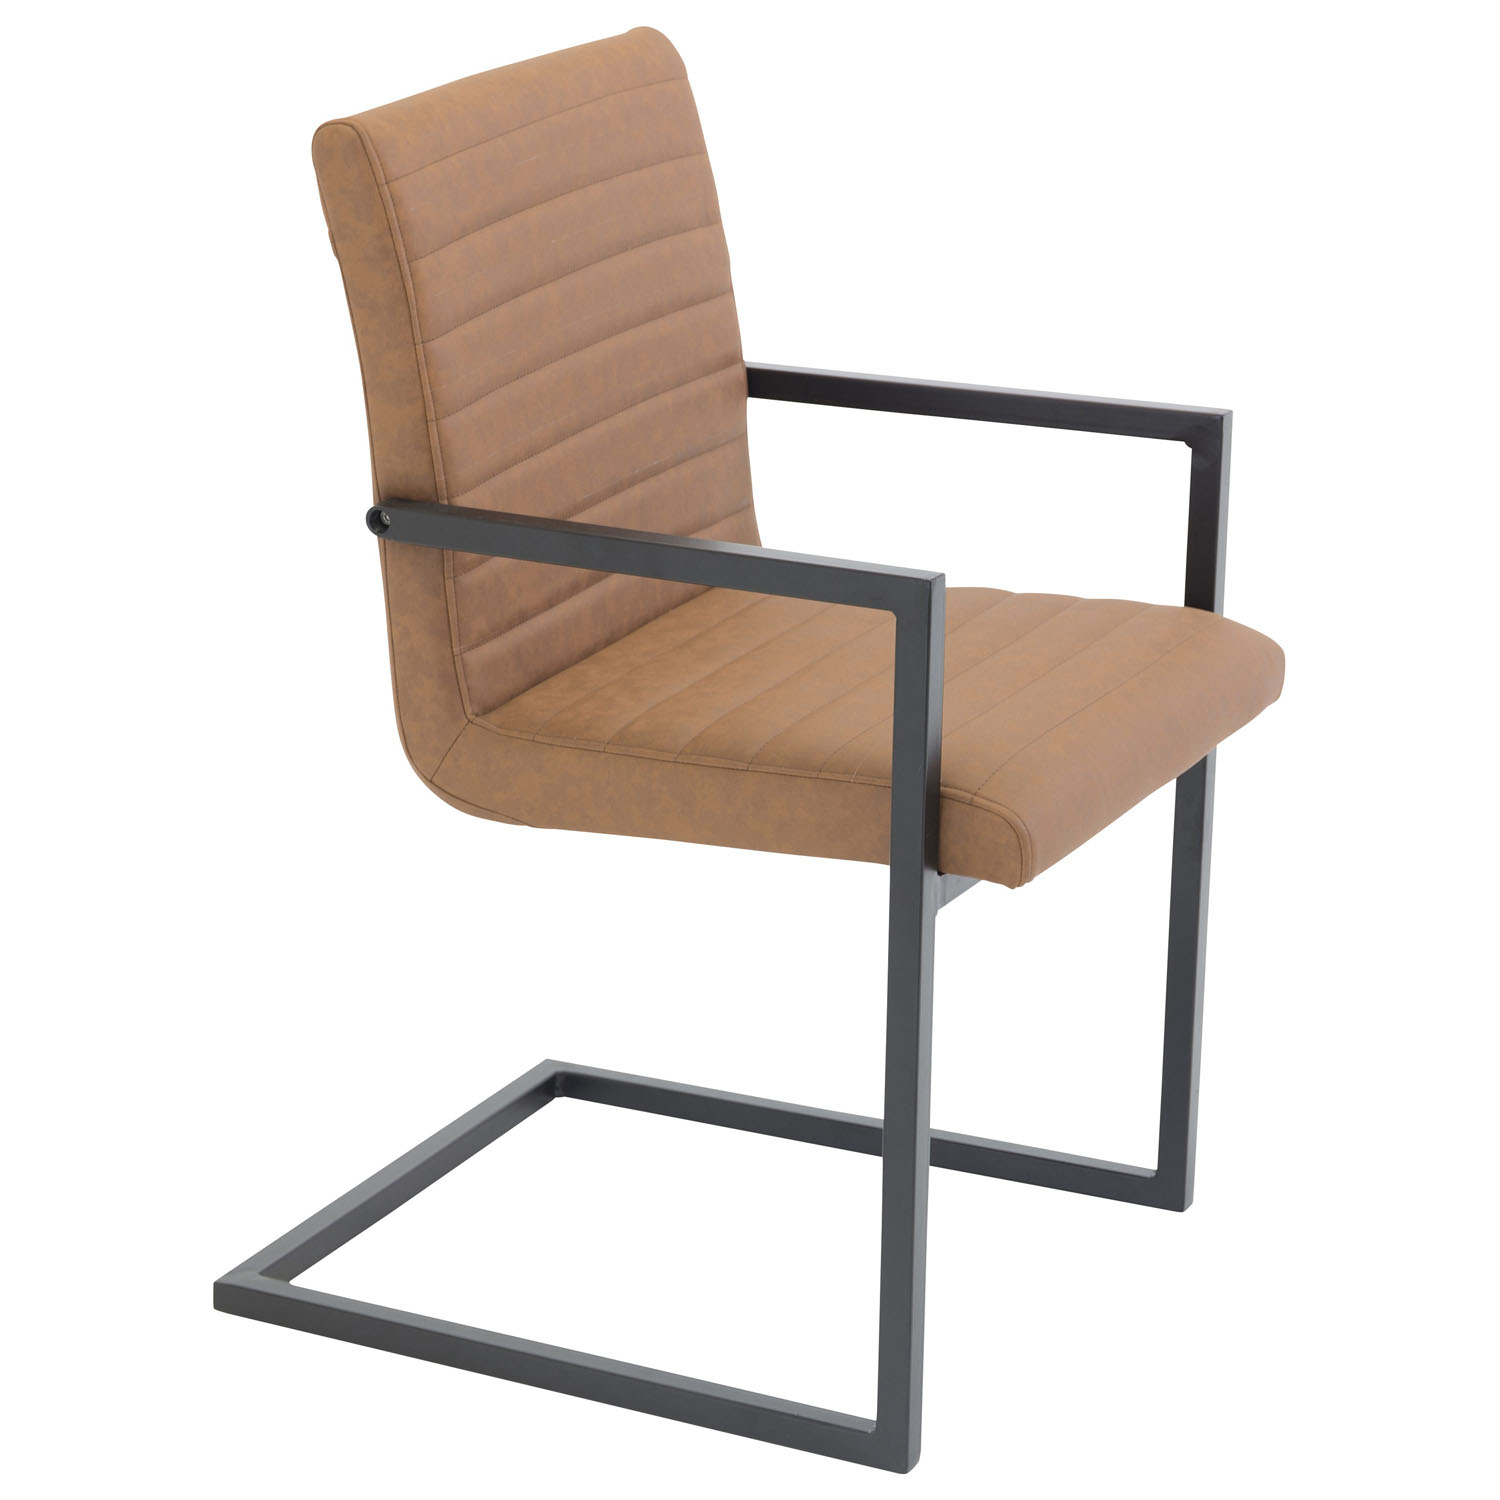 VENTURE DESIGN Art spisebordsstol, m. armlæn - brun PU og sort metal